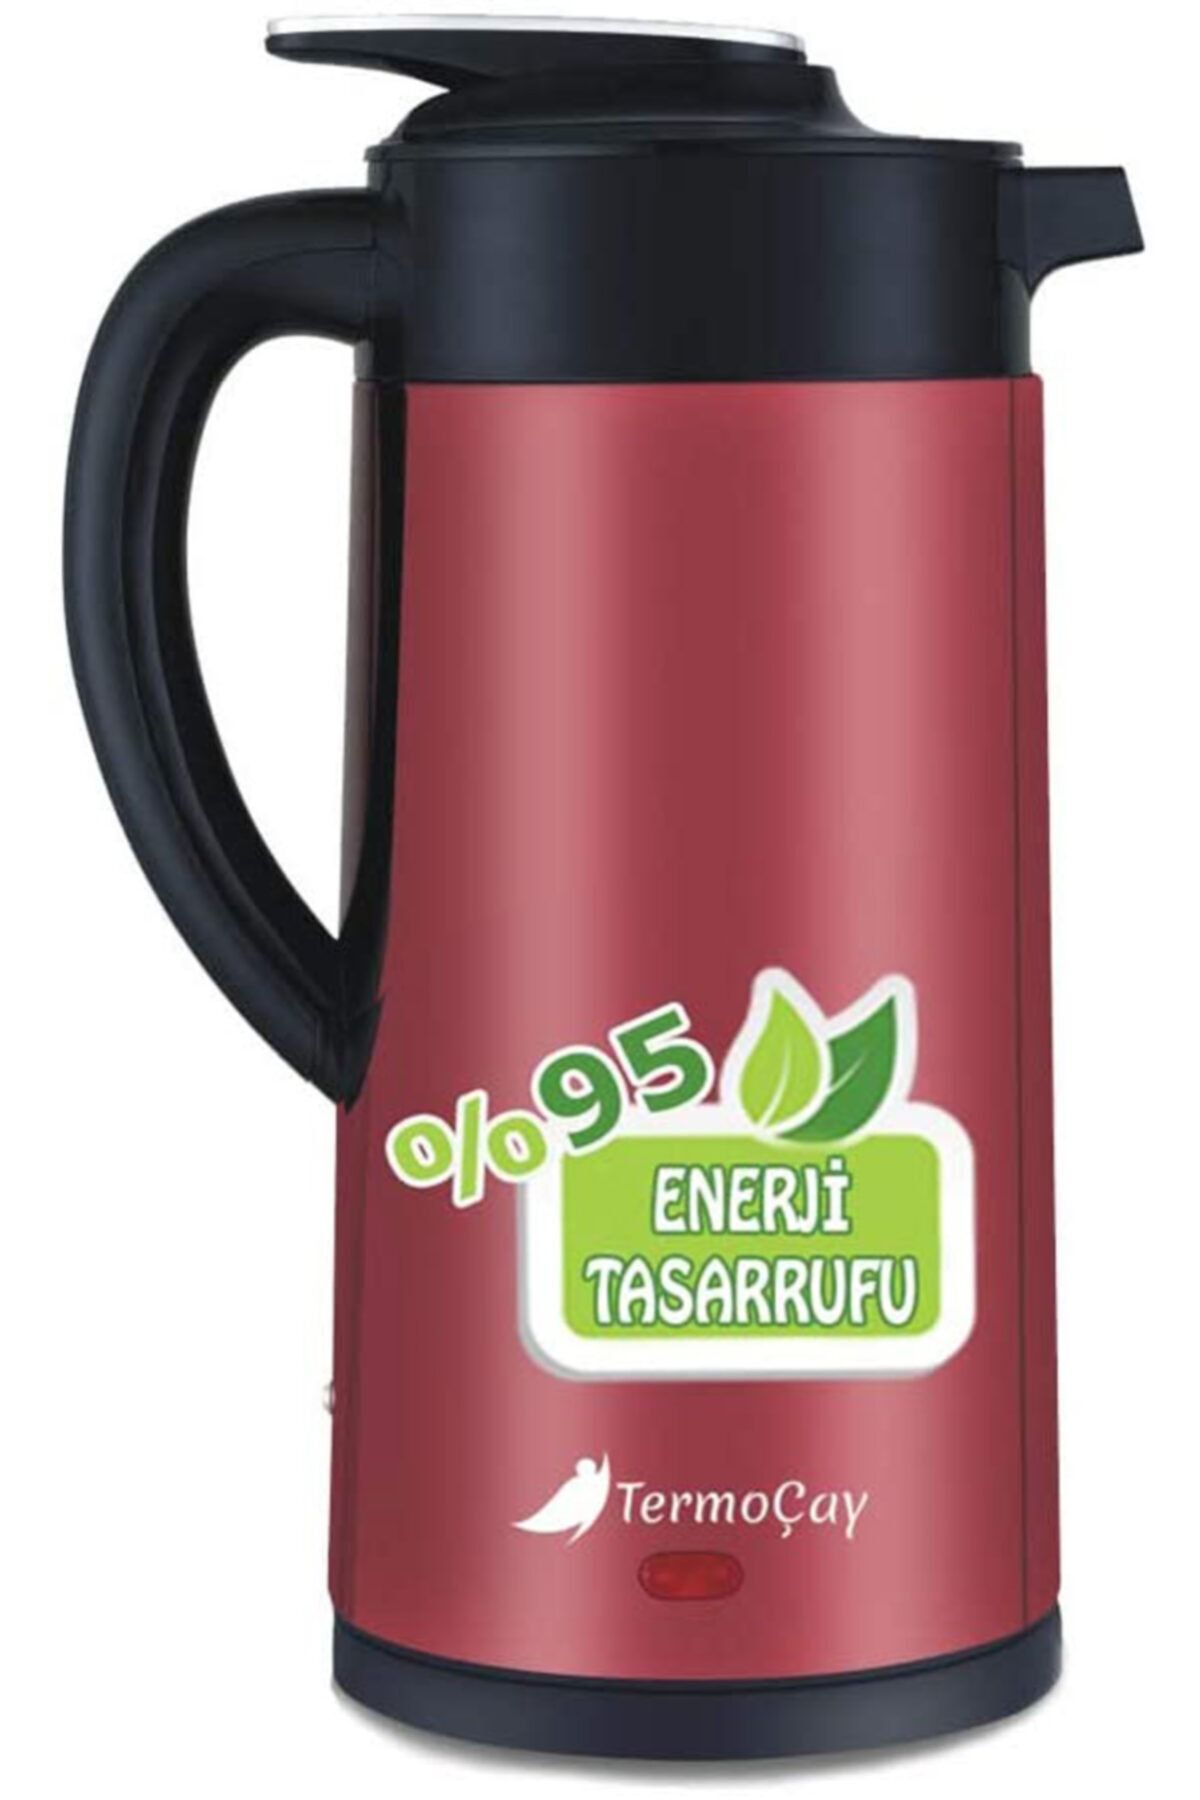 Shibo Termoçay Termos Özellikli Su Isıtıcı Kettle Çay Makinesi Kırmızı